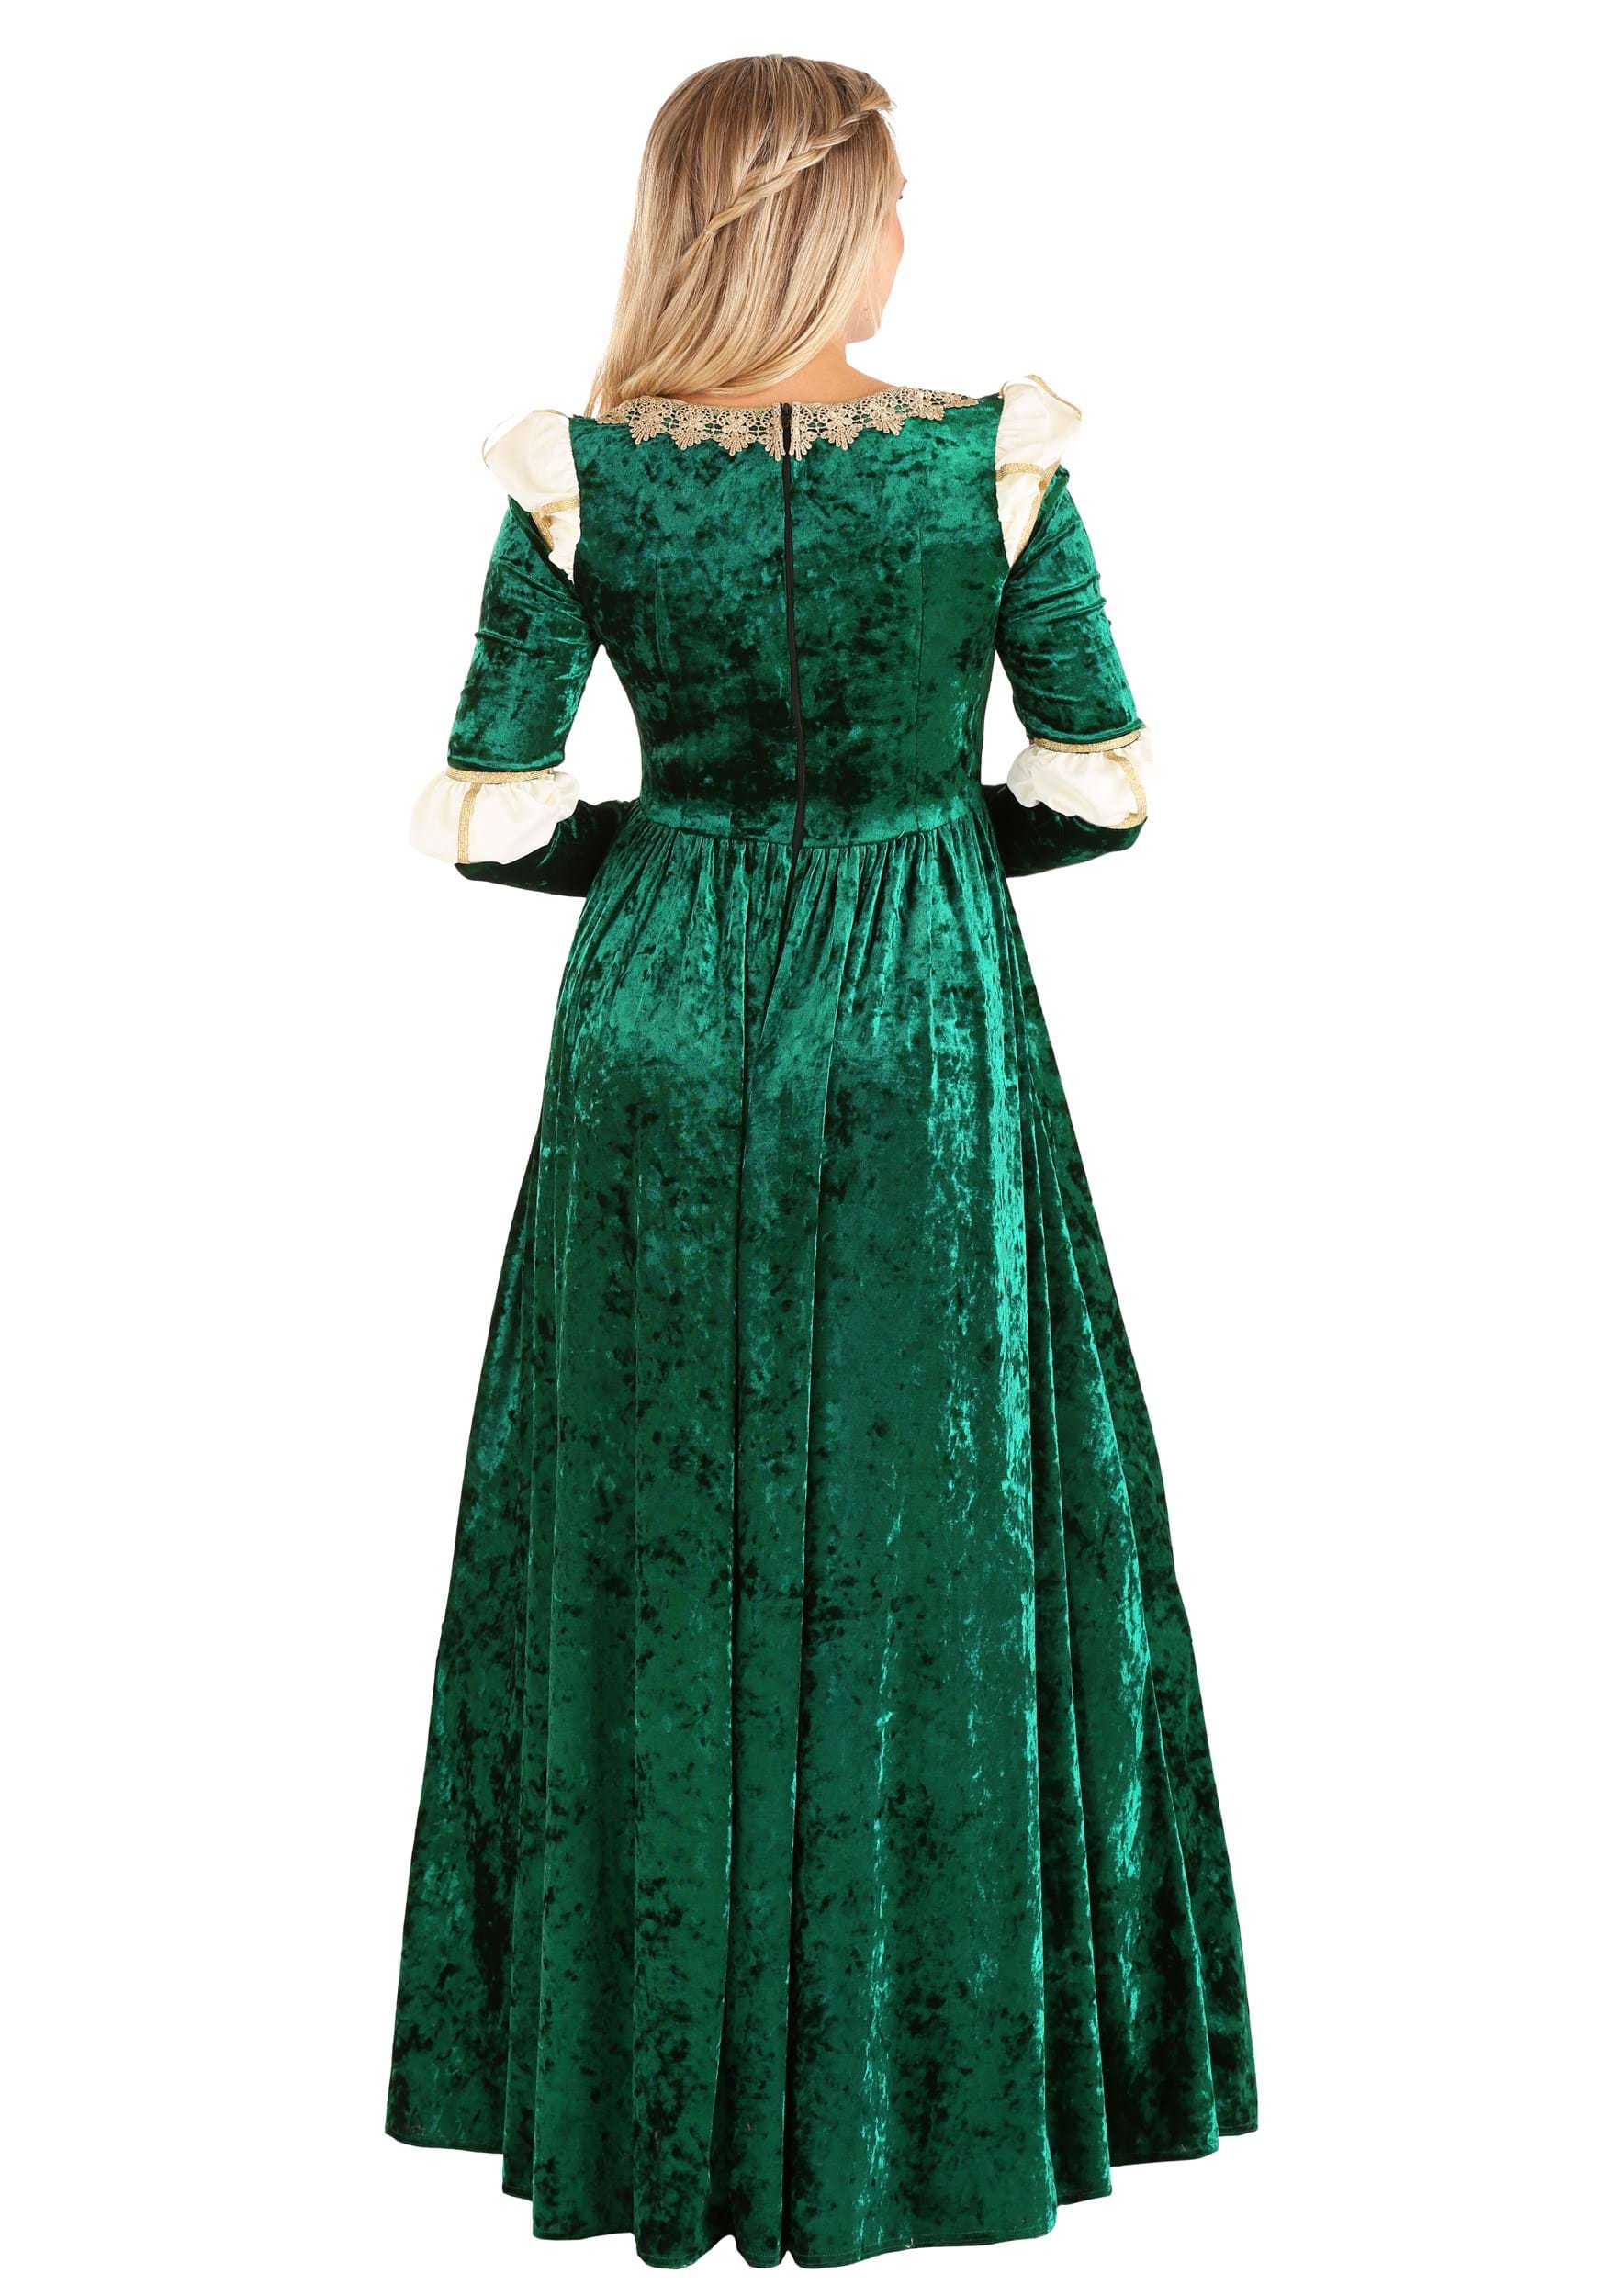 Women's Emerald Maiden Halloween Costume